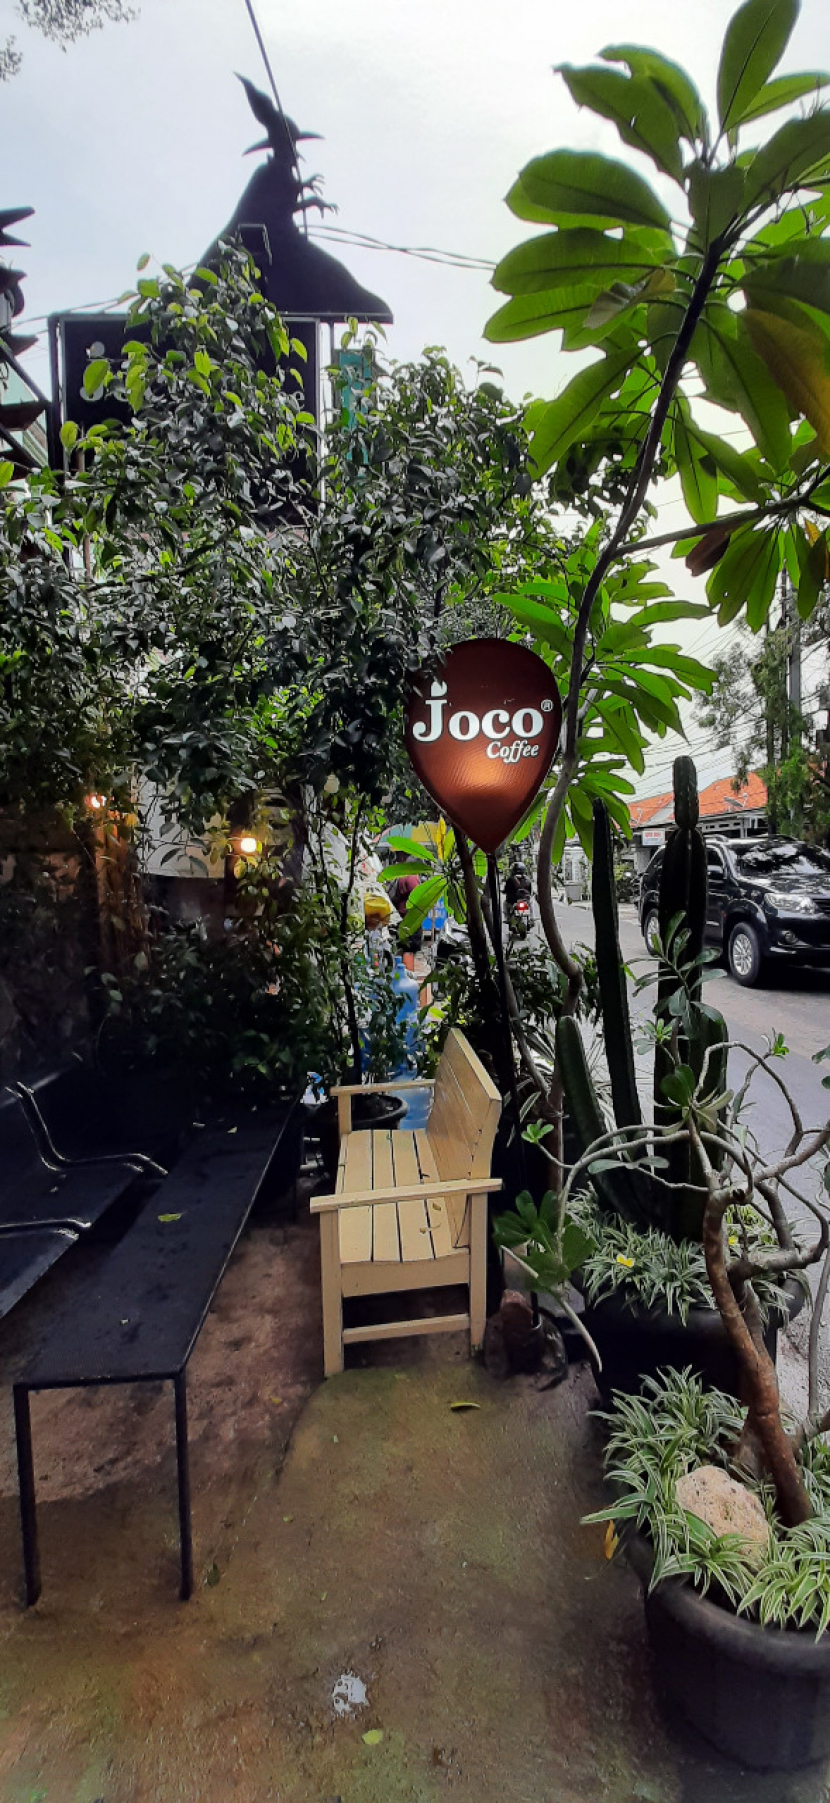 Joco Coffee, kedai kopi bernuansa Bali di dekat Ragunan, Jakarta Selatan